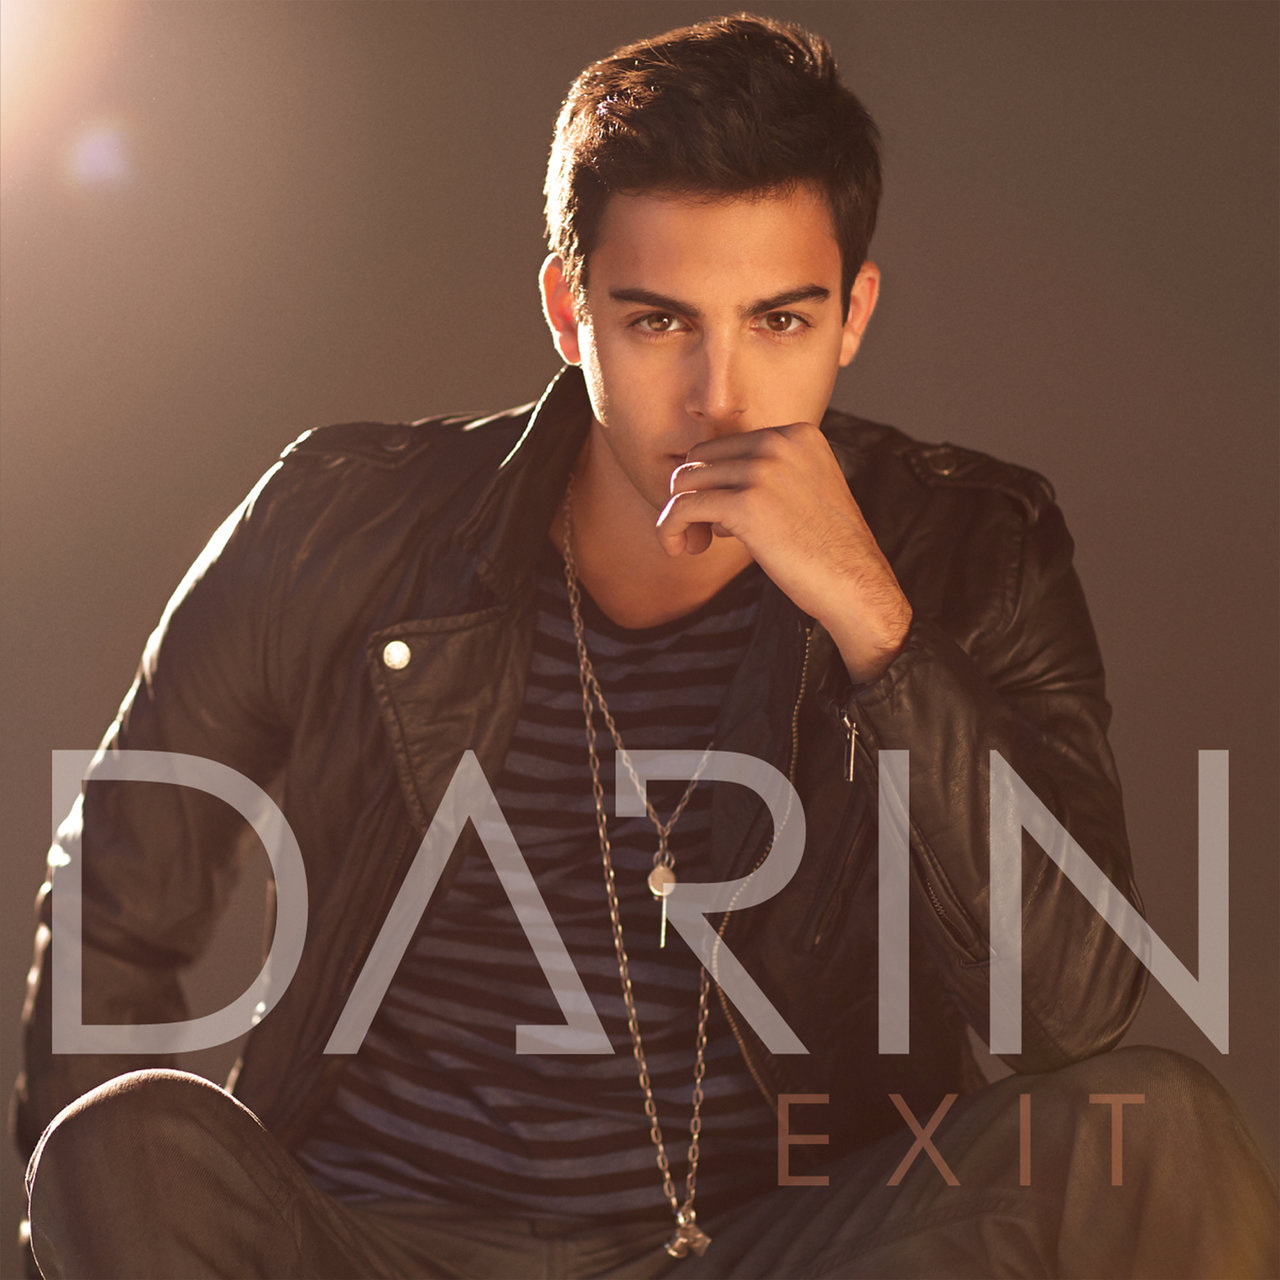 Darin Exit cover artwork